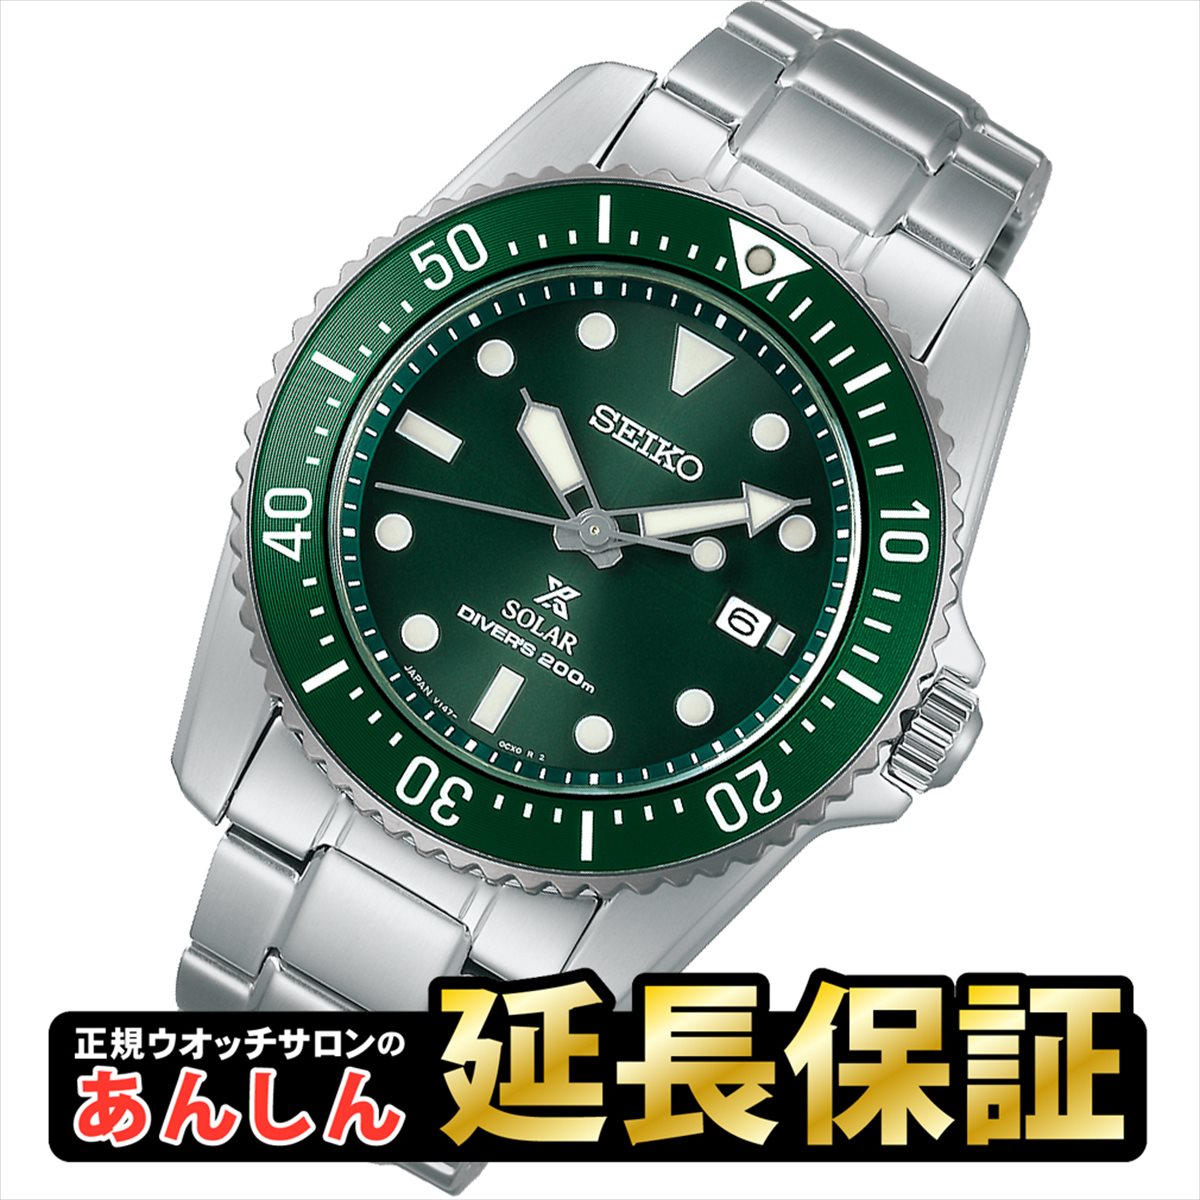 楽天市場】メンズ腕時計（ブランド:セイコー×シリーズ:プロスペックス 